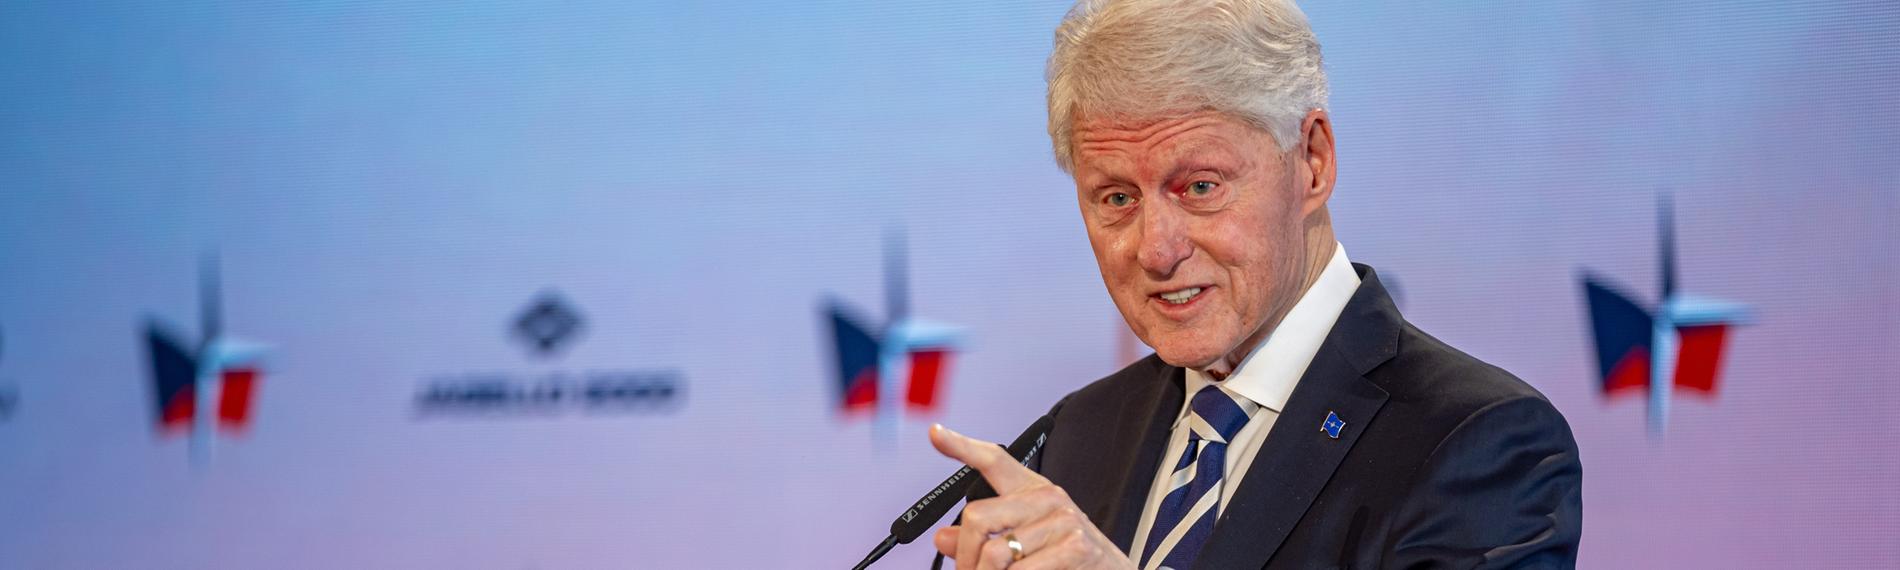 Tschechien, Prag: Der ehemalige US-Präsident Bill Clinton hält eine Rede während der Sicherheitskonferenz auf der Prager Burg